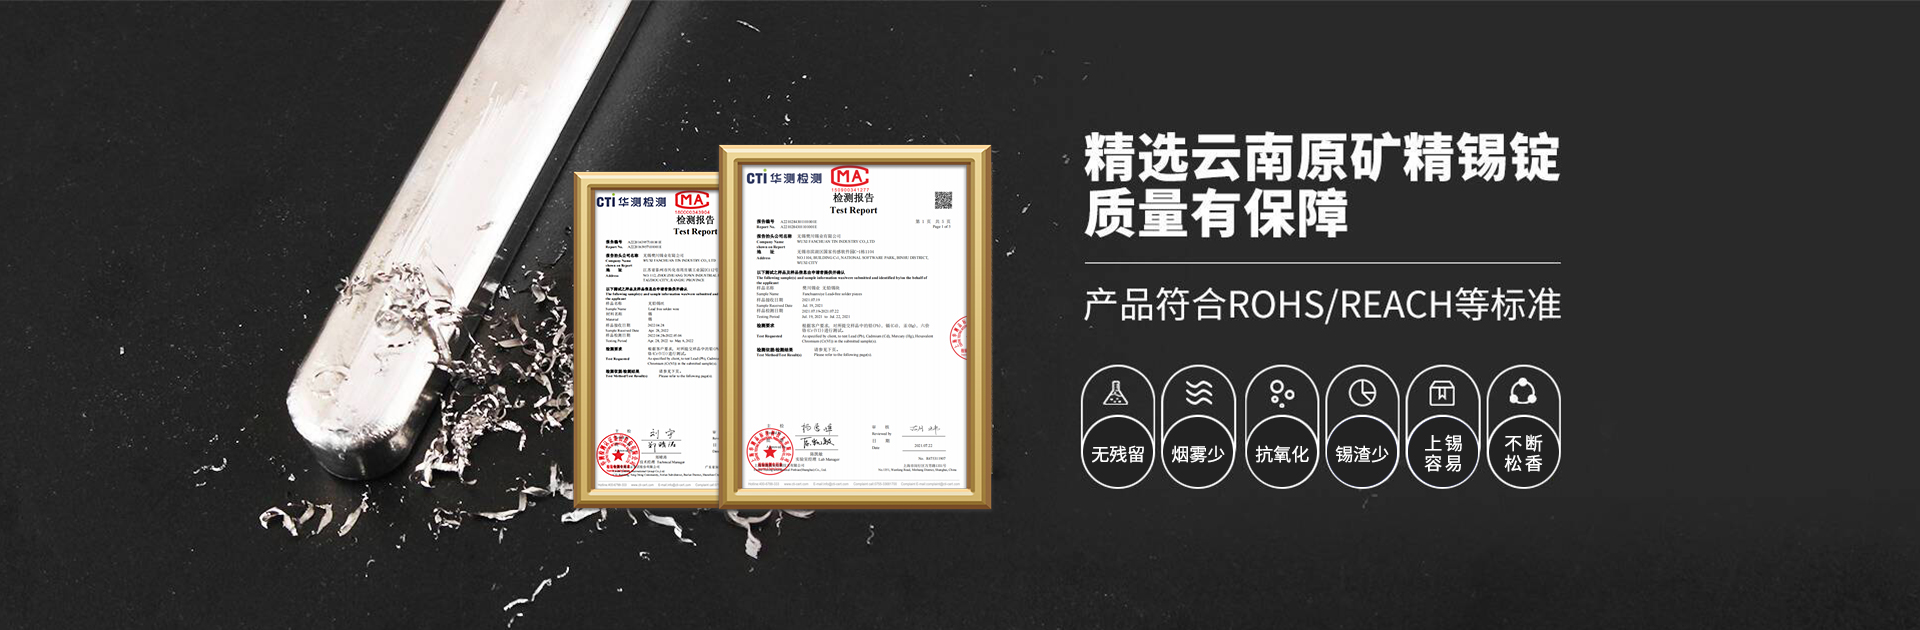 樊川产品符合ROHS/REACH等标准